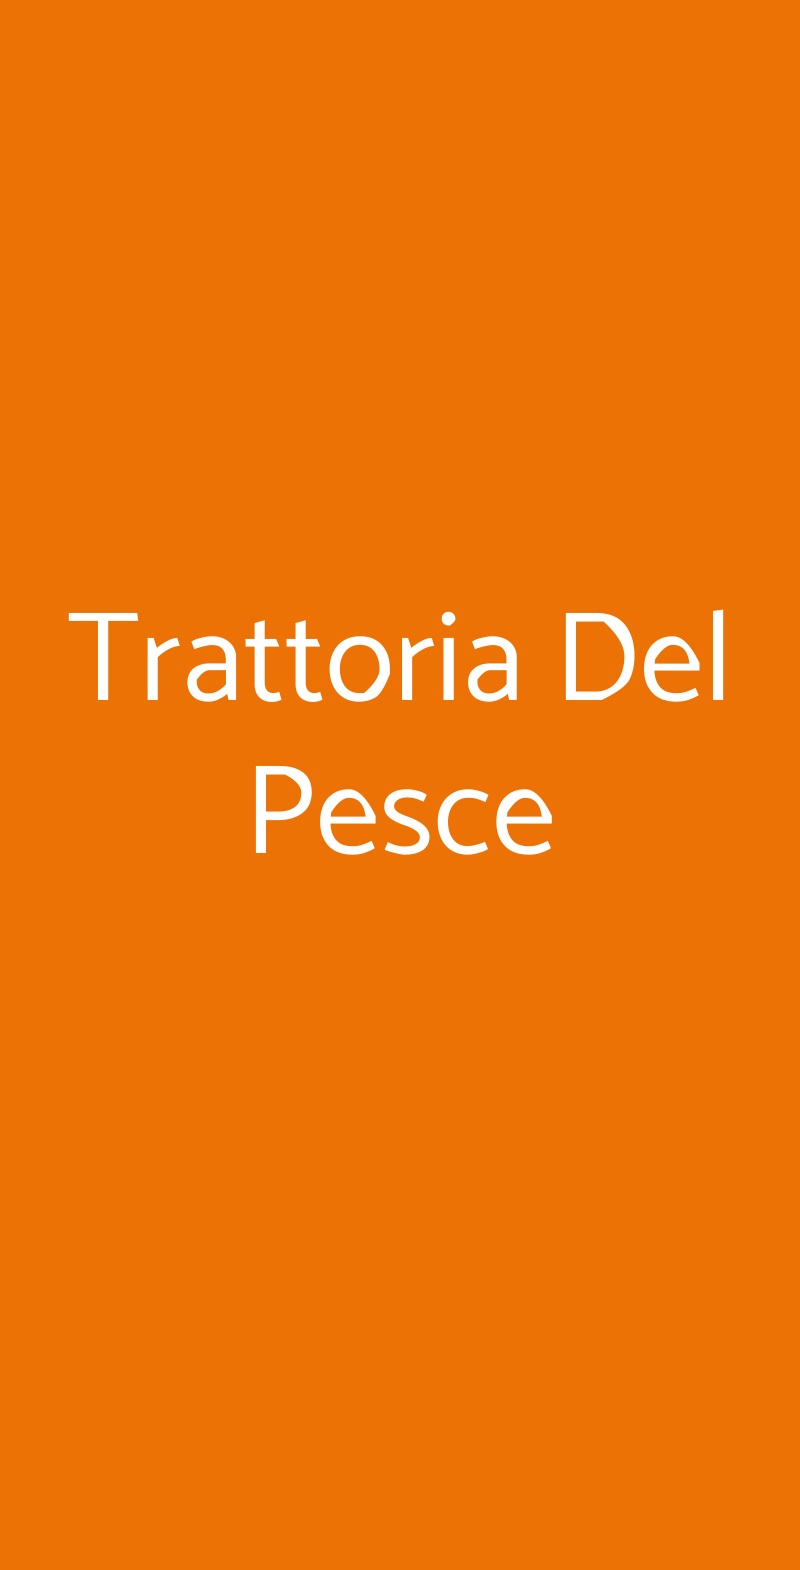 Trattoria Del Pesce Roma menù 1 pagina